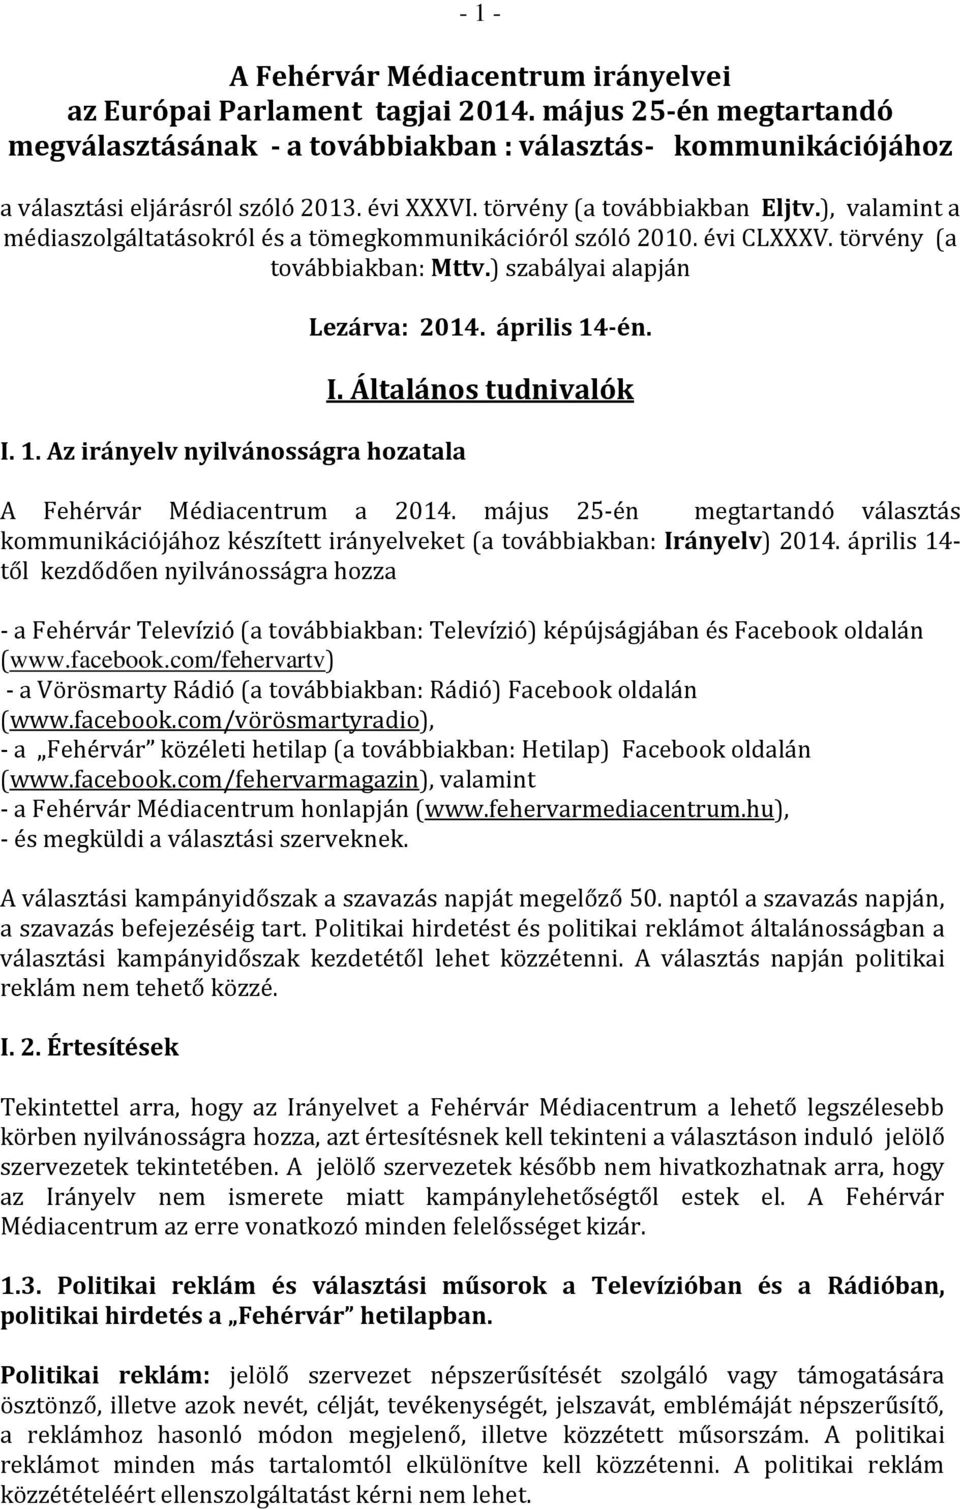 Az irányelv nyilvánosságra hozatala Lezárva: 2014. április 14-én. I. Általános tudnivalók A Fehérvár Médiacentrum a 2014.